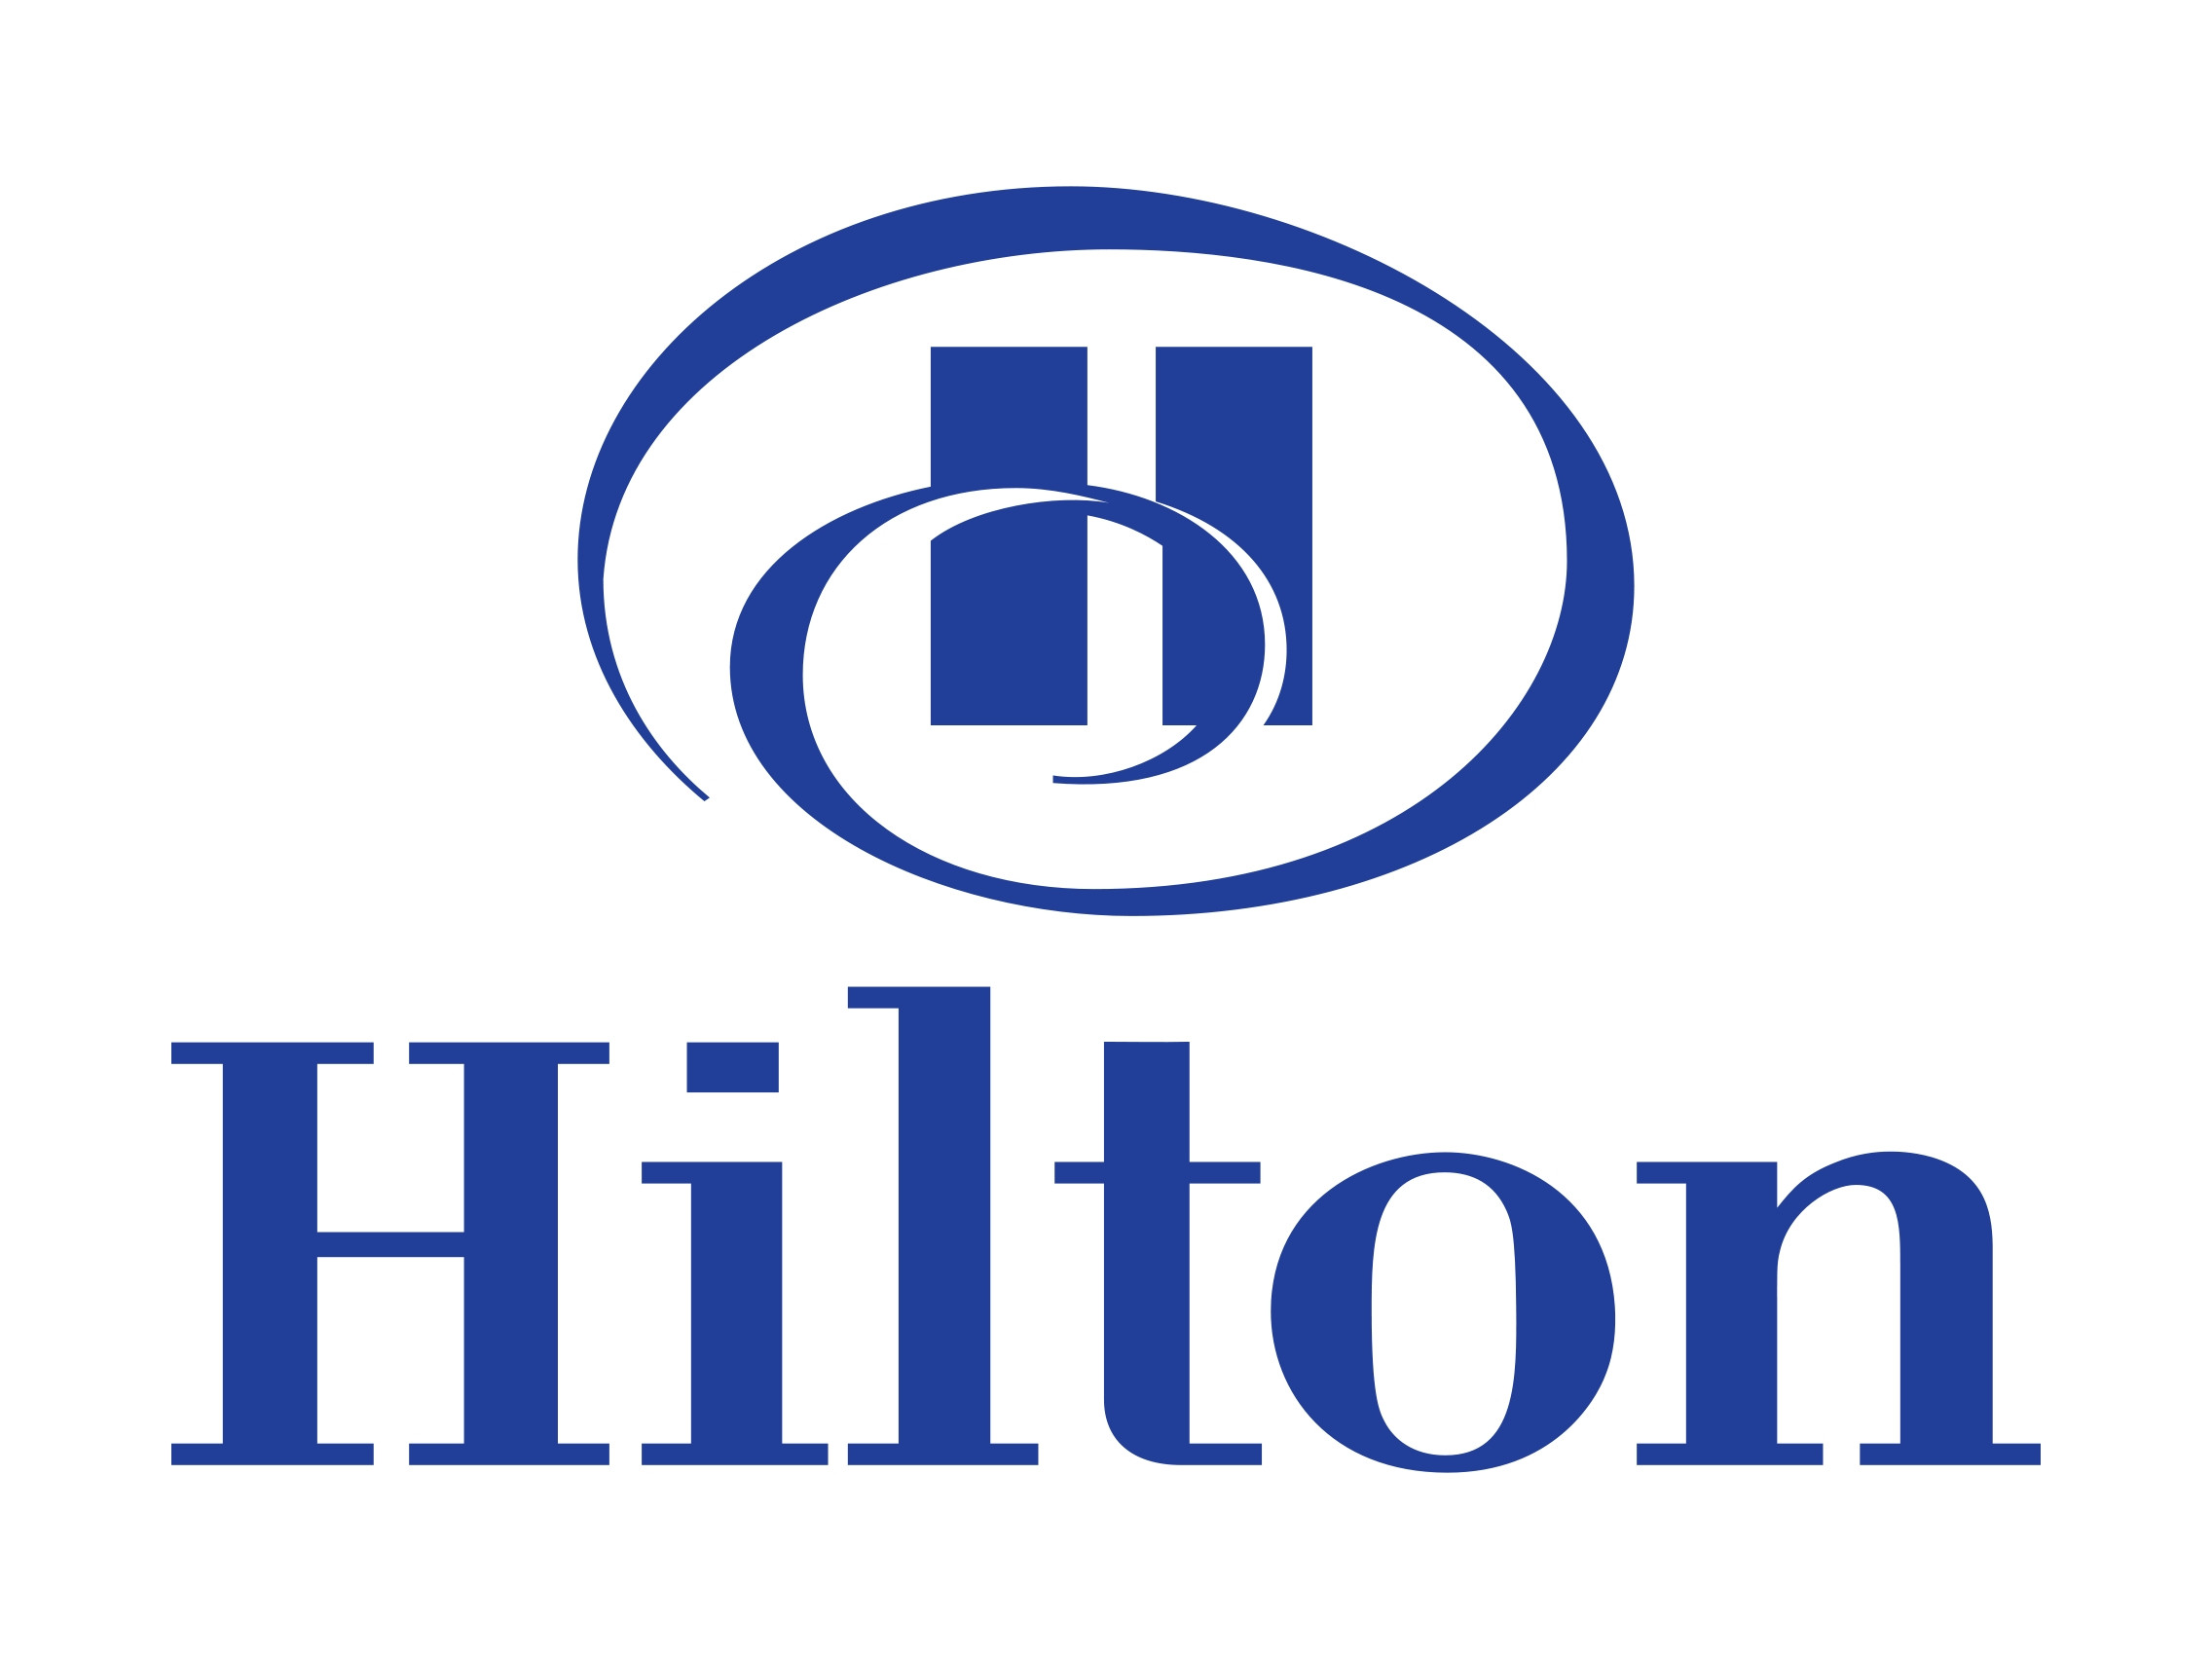 Les hôtels Hilton victimes d'une cyberattaque